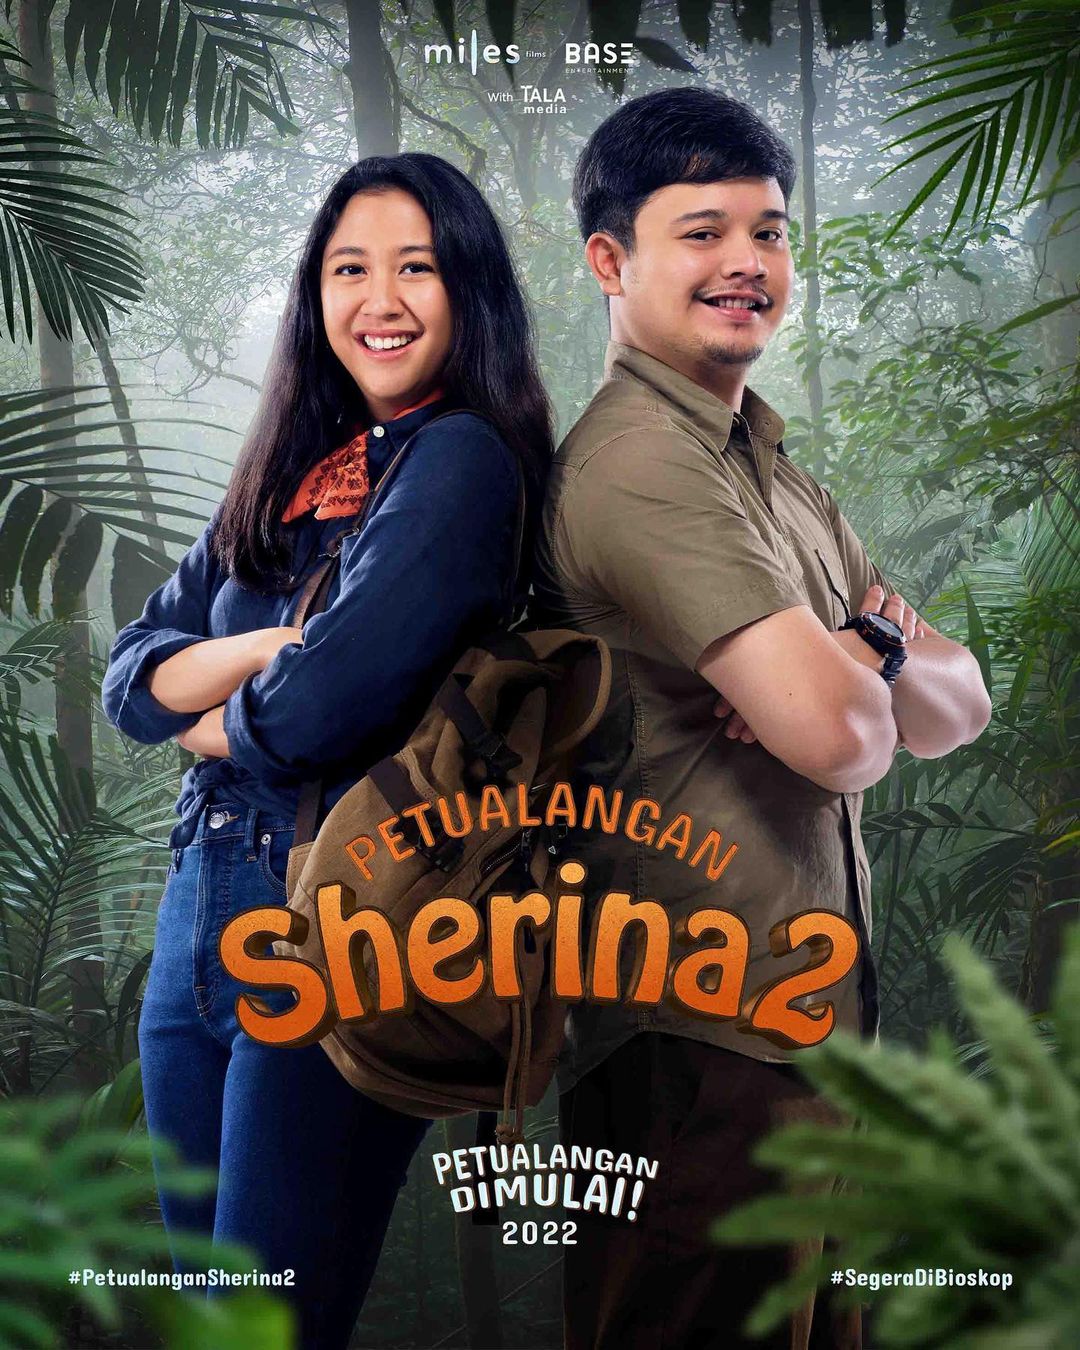 Film Petualangan Sherina 2 Bakal Hadir, Sudah Masuk Produksi!